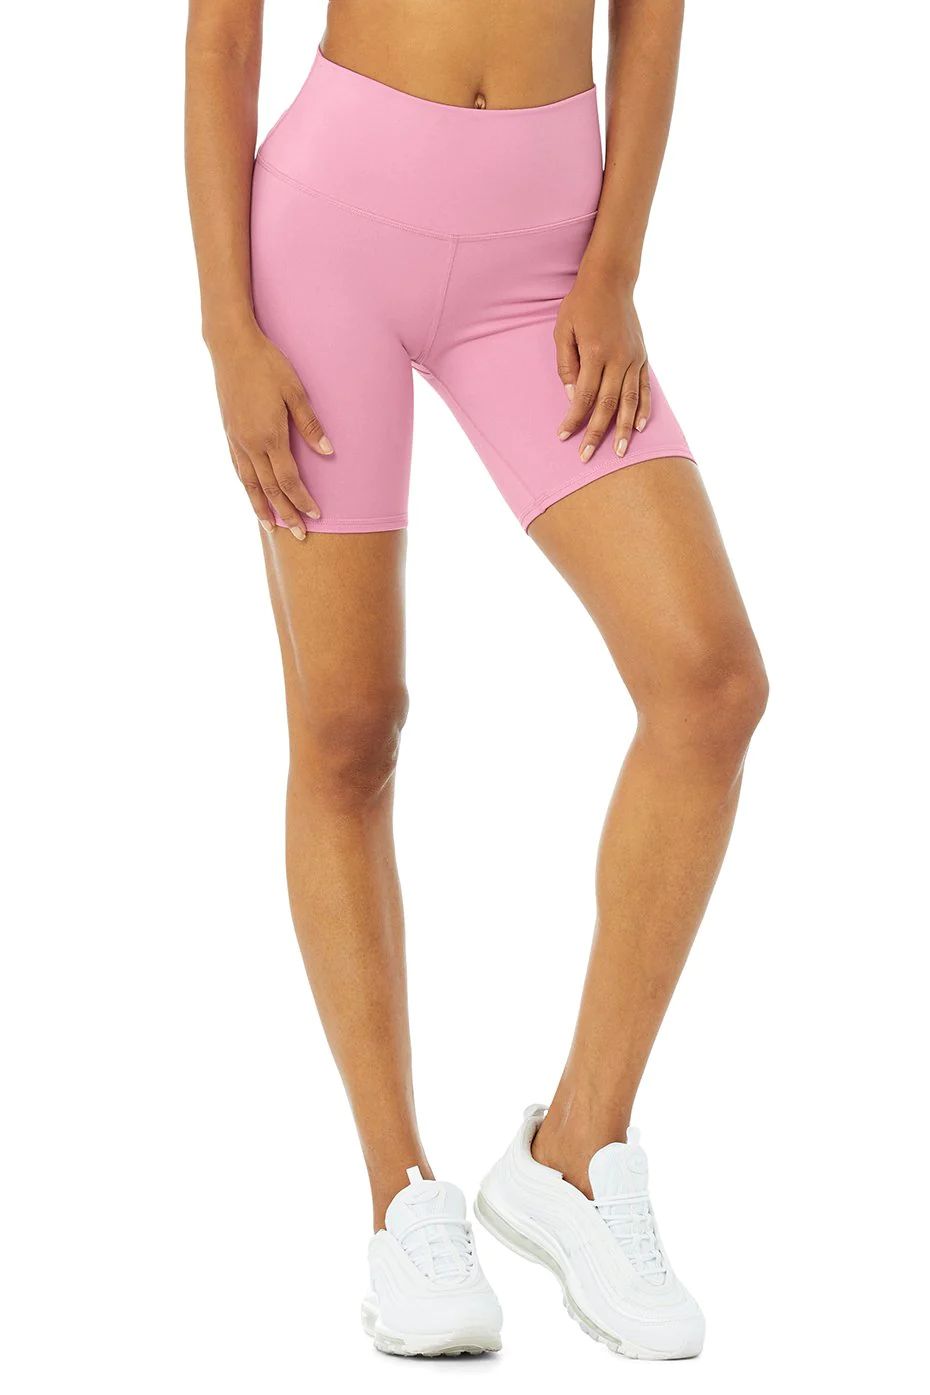 High-Waist Biker Short in Parisian Pink, Size: 2XS | Alo YogaÂ® | Alo Yoga